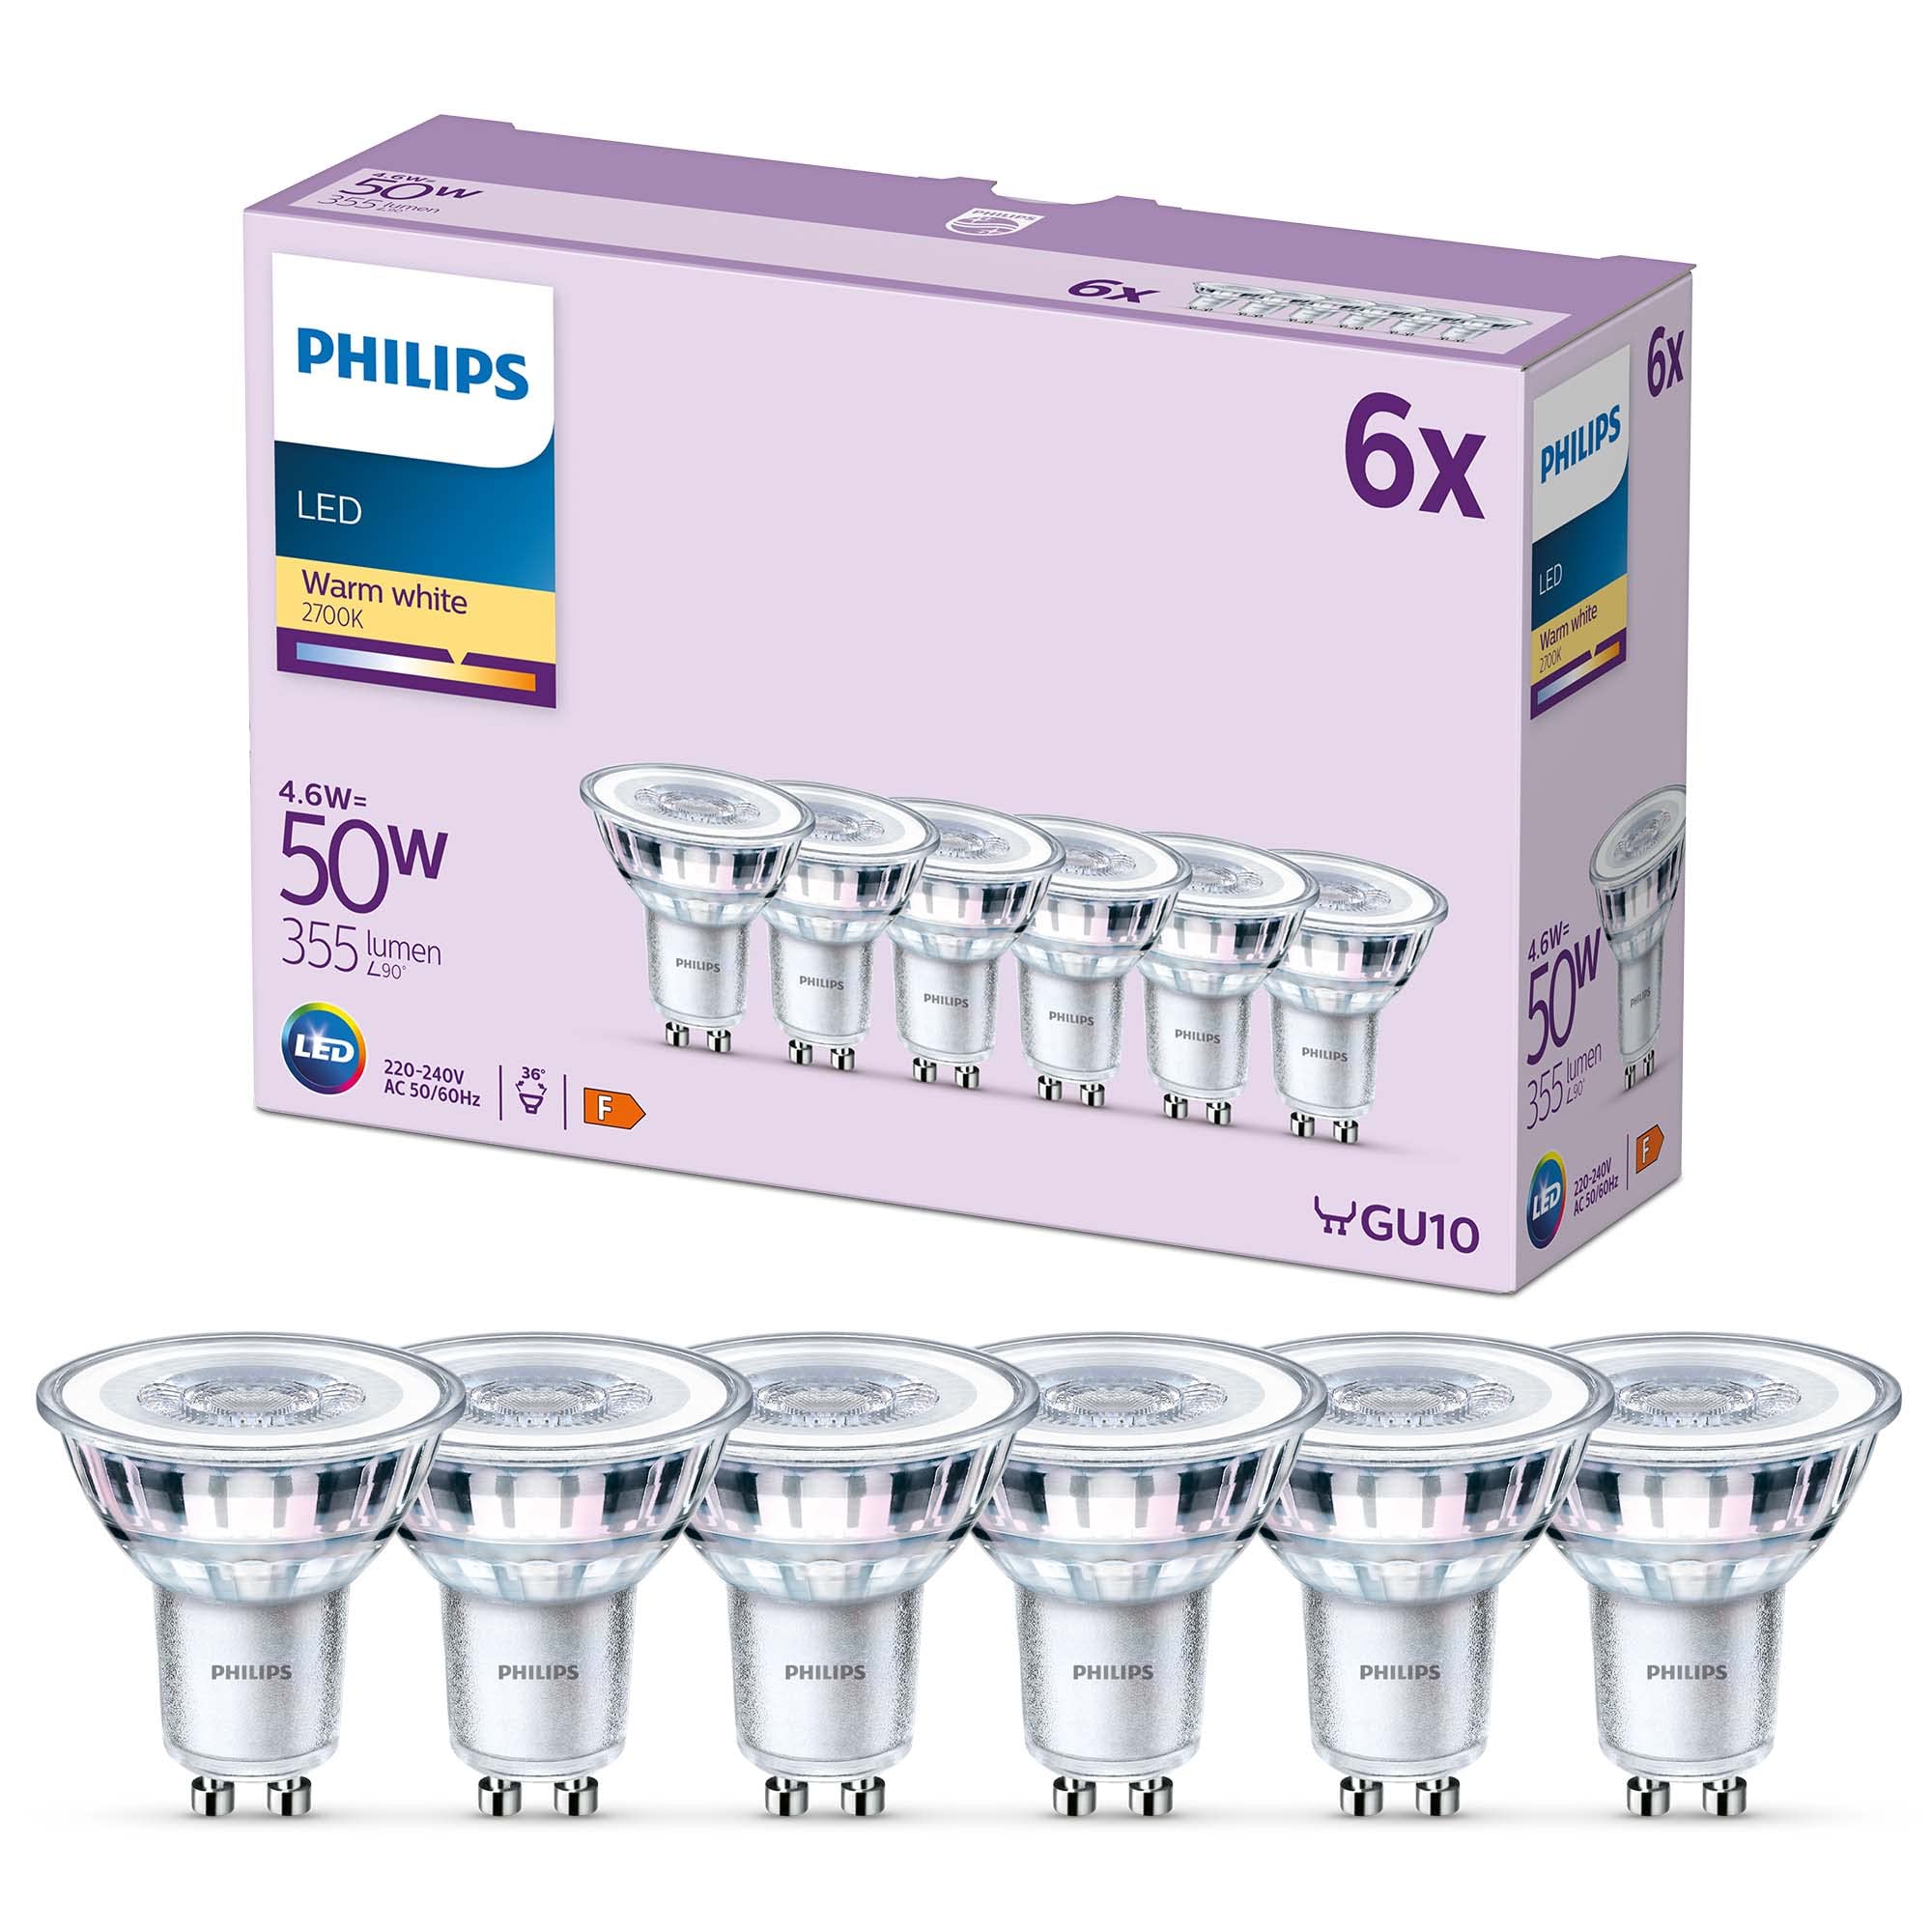 Populaire Philips pack de 6 ampoules LED GU10, 50W, bla